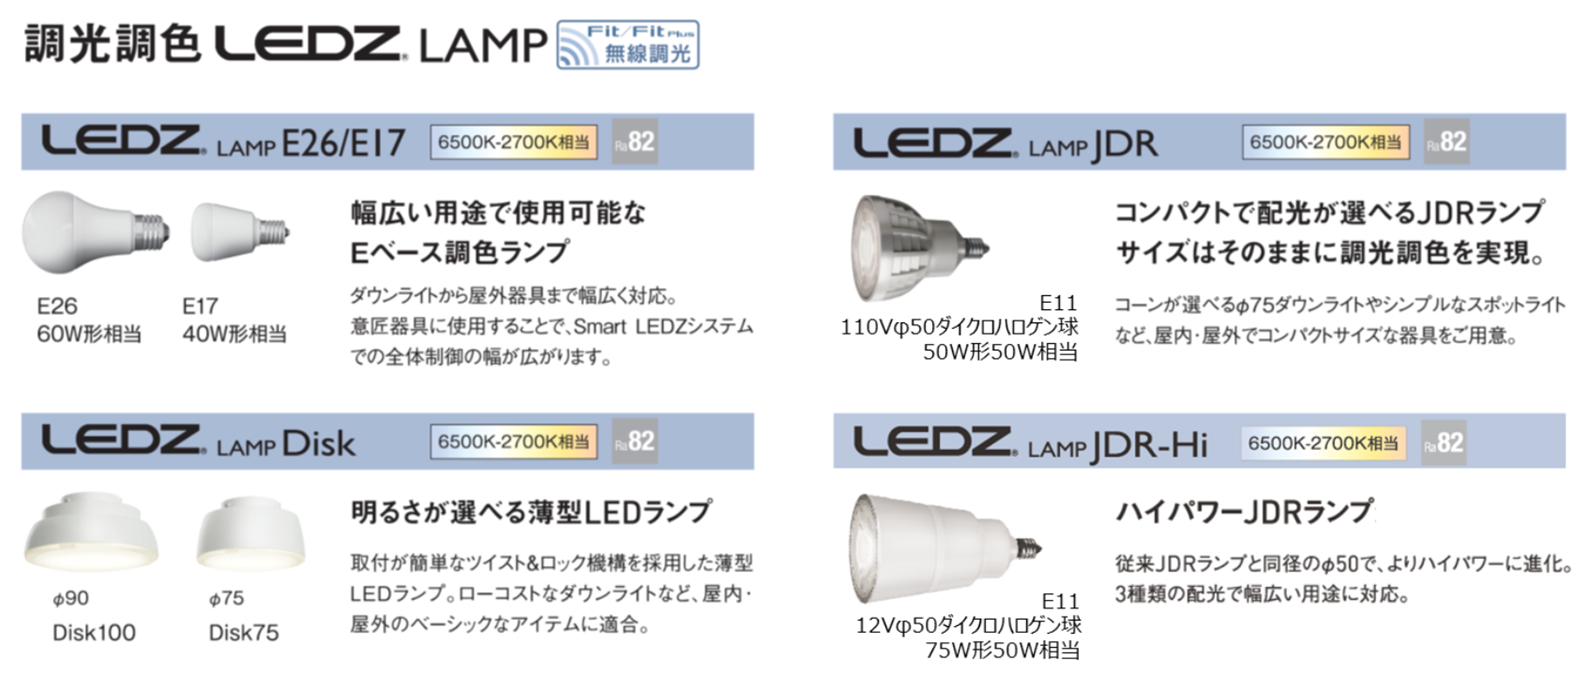 調光調色 LEDZ LAMP  ピックアップ製品  遠藤照明